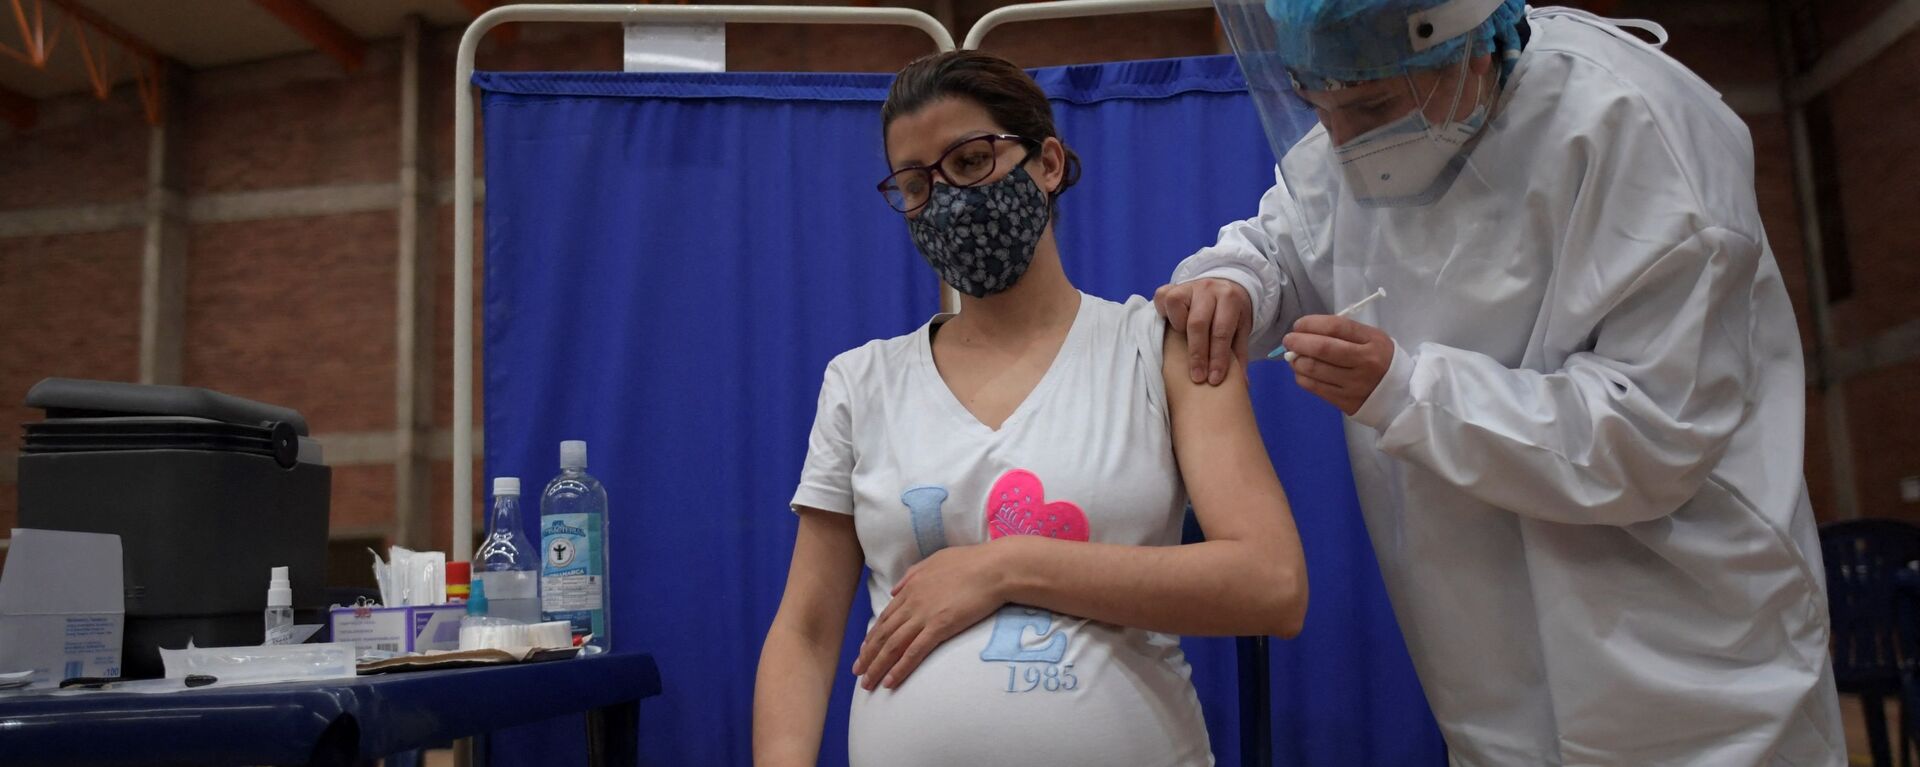 Беременная женщина получает дозу вакцины против COVID-19. Архивное фото - Sputnik Кыргызстан, 1920, 17.11.2021